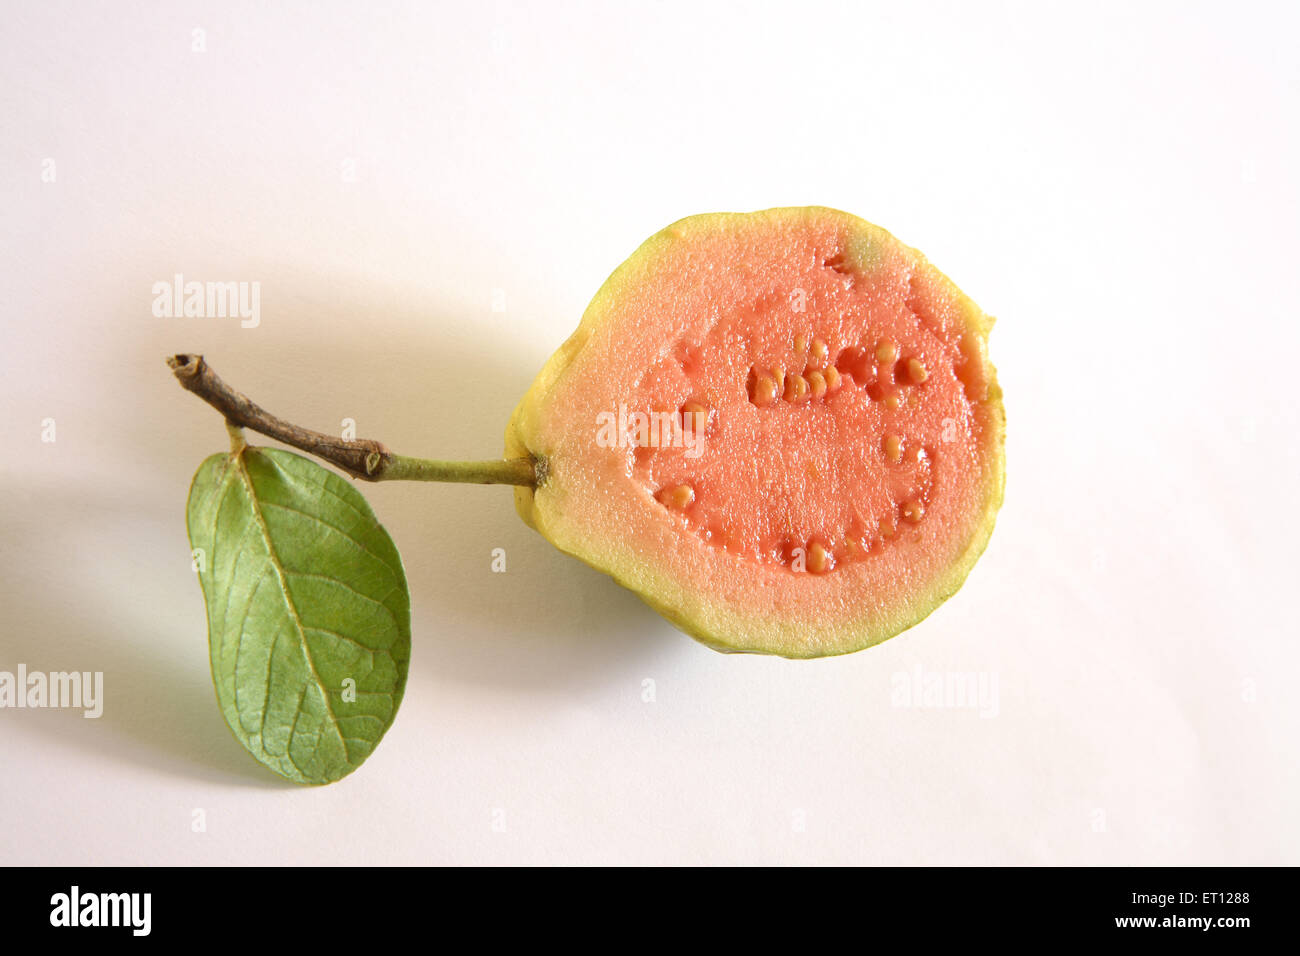 Frutti ; amrood metà di guava psidium guyava con foglia verde su sfondo bianco Foto Stock